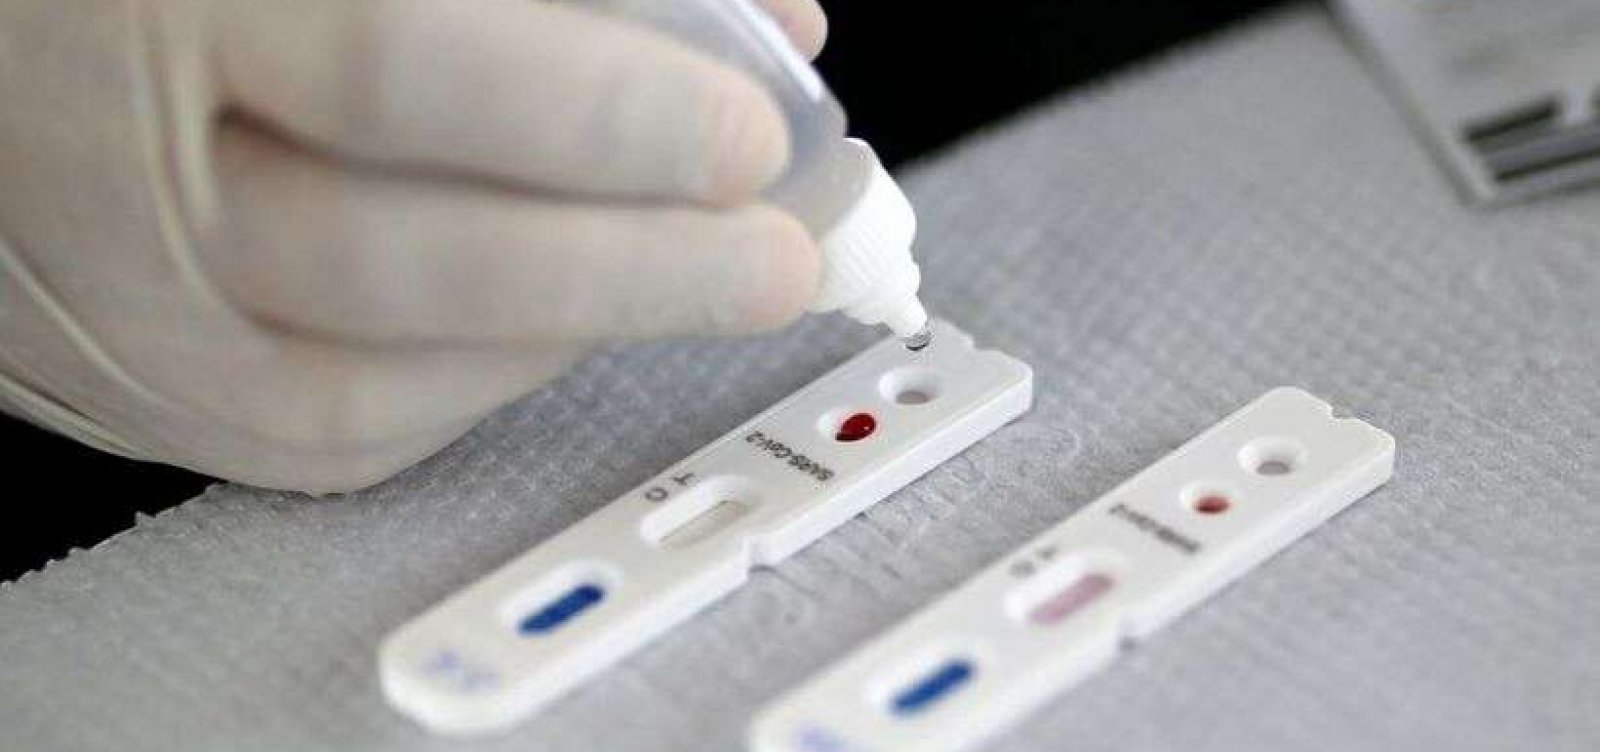 Índice de positivos para Covid em testes de farmácia vai a 43% na 3ª semana de janeiro, diz Abrafarma